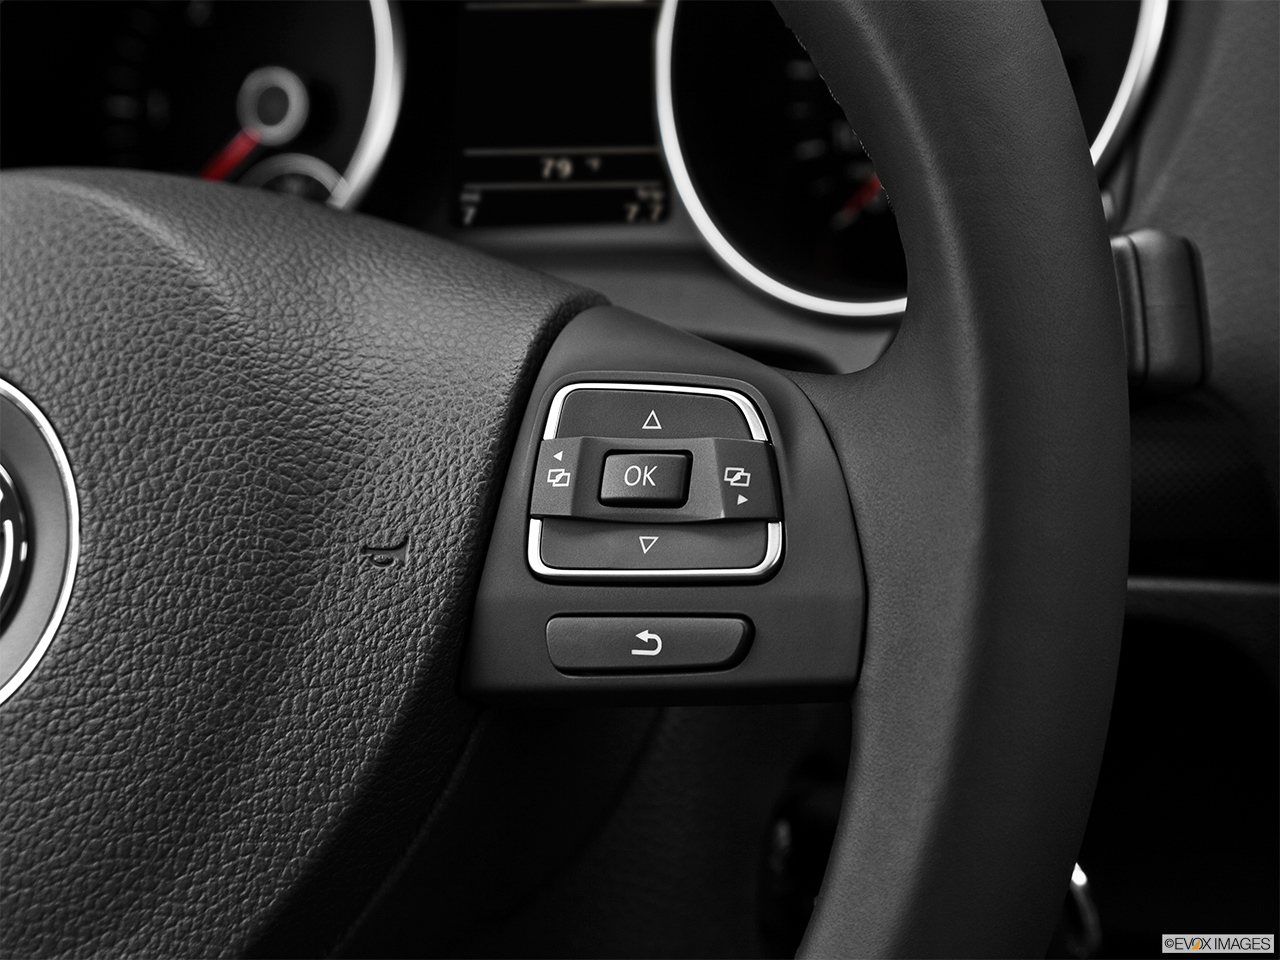 2013 Volkswagen Jetta SportWagen TDI Steering Wheel Controls (Right Side) 